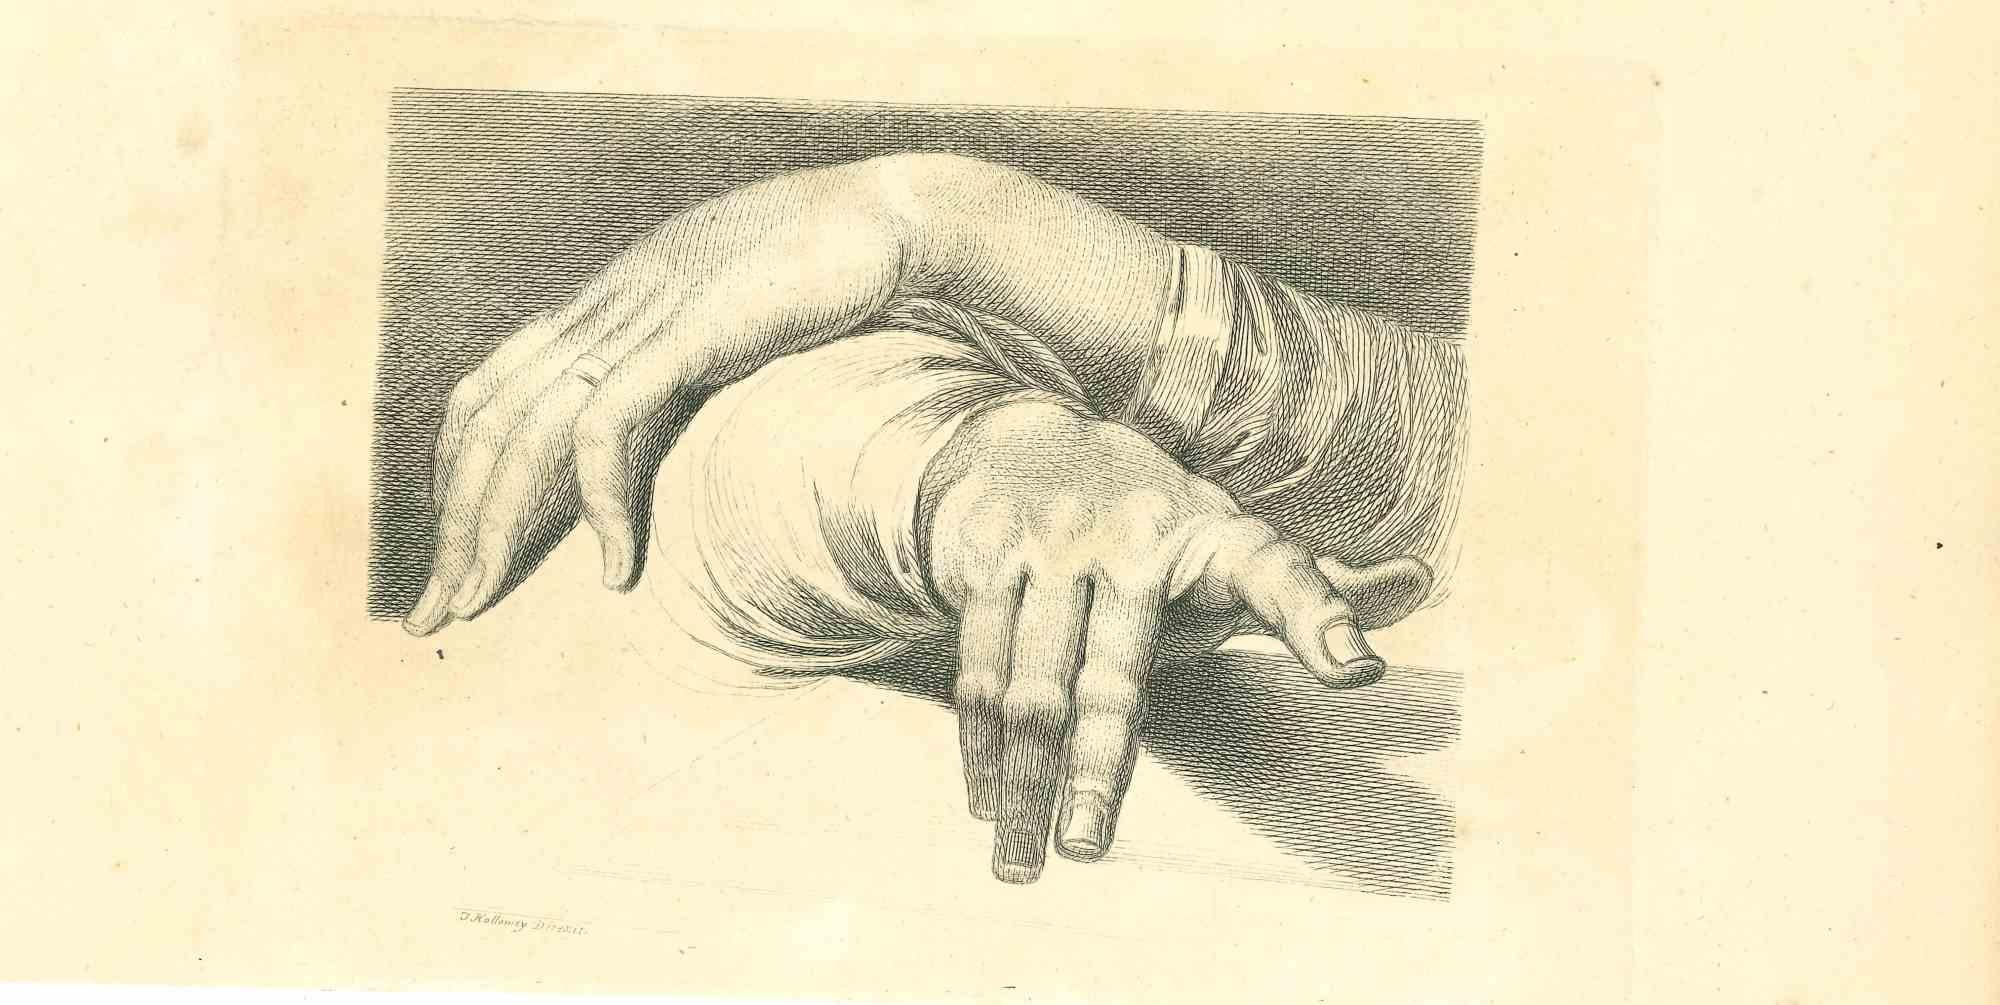 The Physiognomy - The Hands ist eine Original-Radierung von Thomas Holloway für Johann Caspar Lavaters "Essays on Physiognomy, Designed to Promote the Knowledge and the Love of Mankind", London, Bensley, 1810. 

Signiert auf der Platte unten